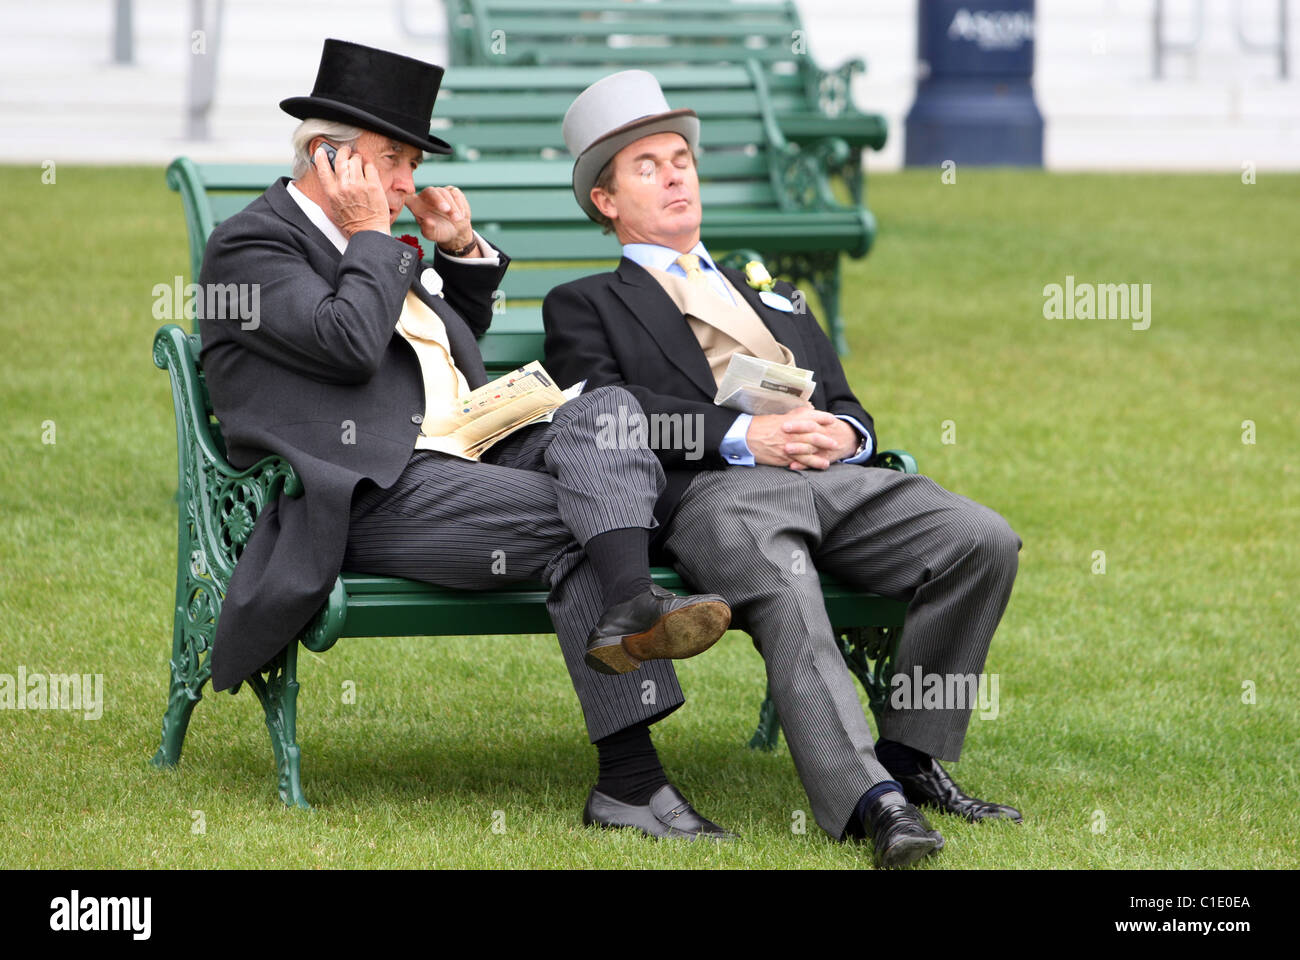 Élégamment vêtue, assis sur un banc, l'Ascot, Royaume-Uni Banque D'Images